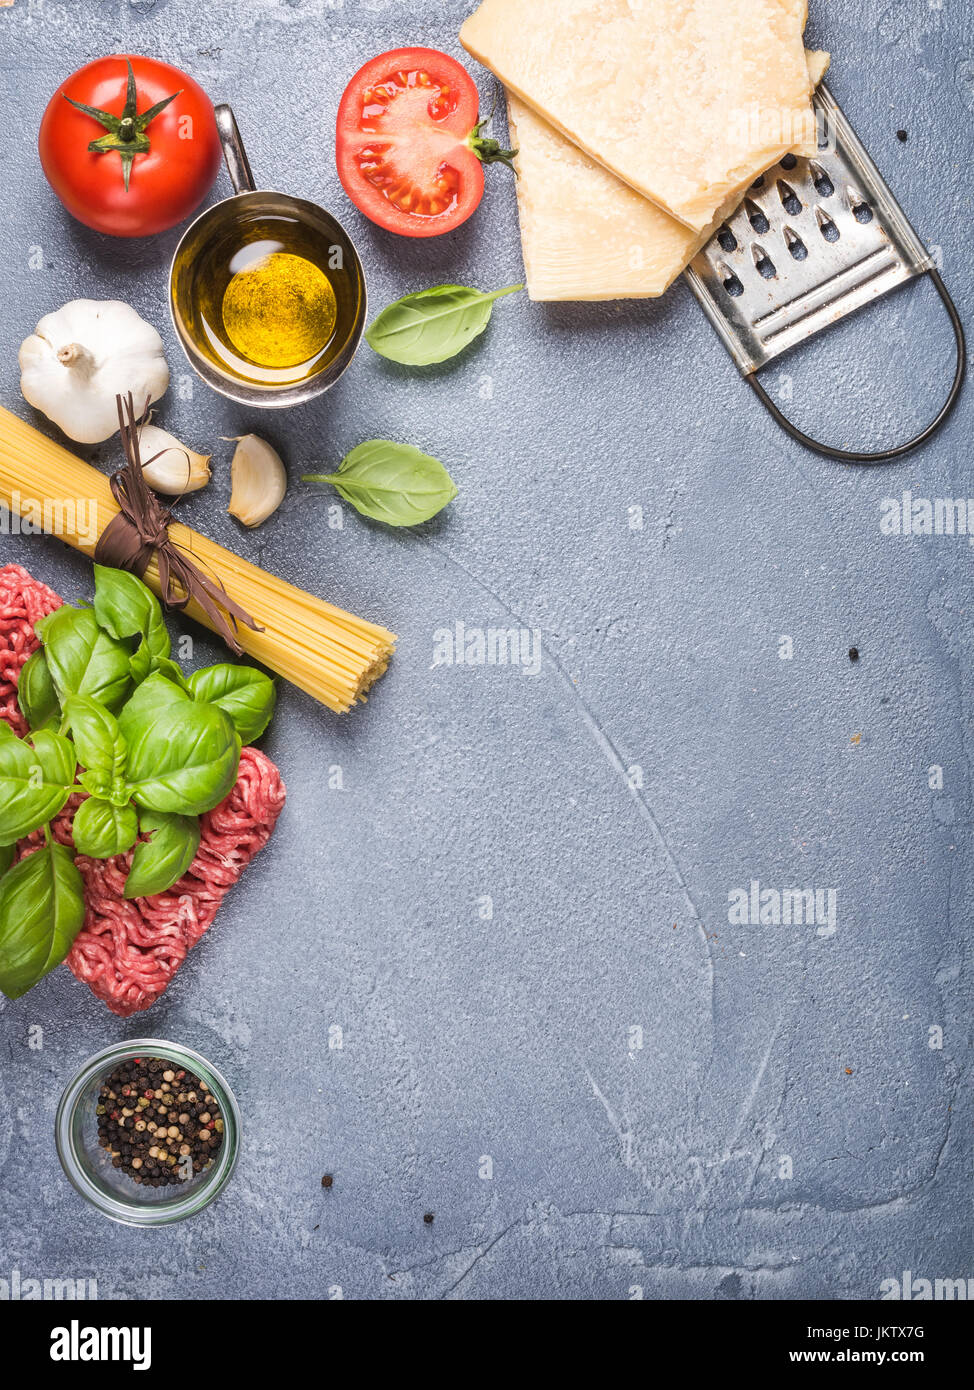 Zutaten für das Kochen Pasta Bolognese auf grauem Beton Hintergrund, Ansicht von oben Stockfoto